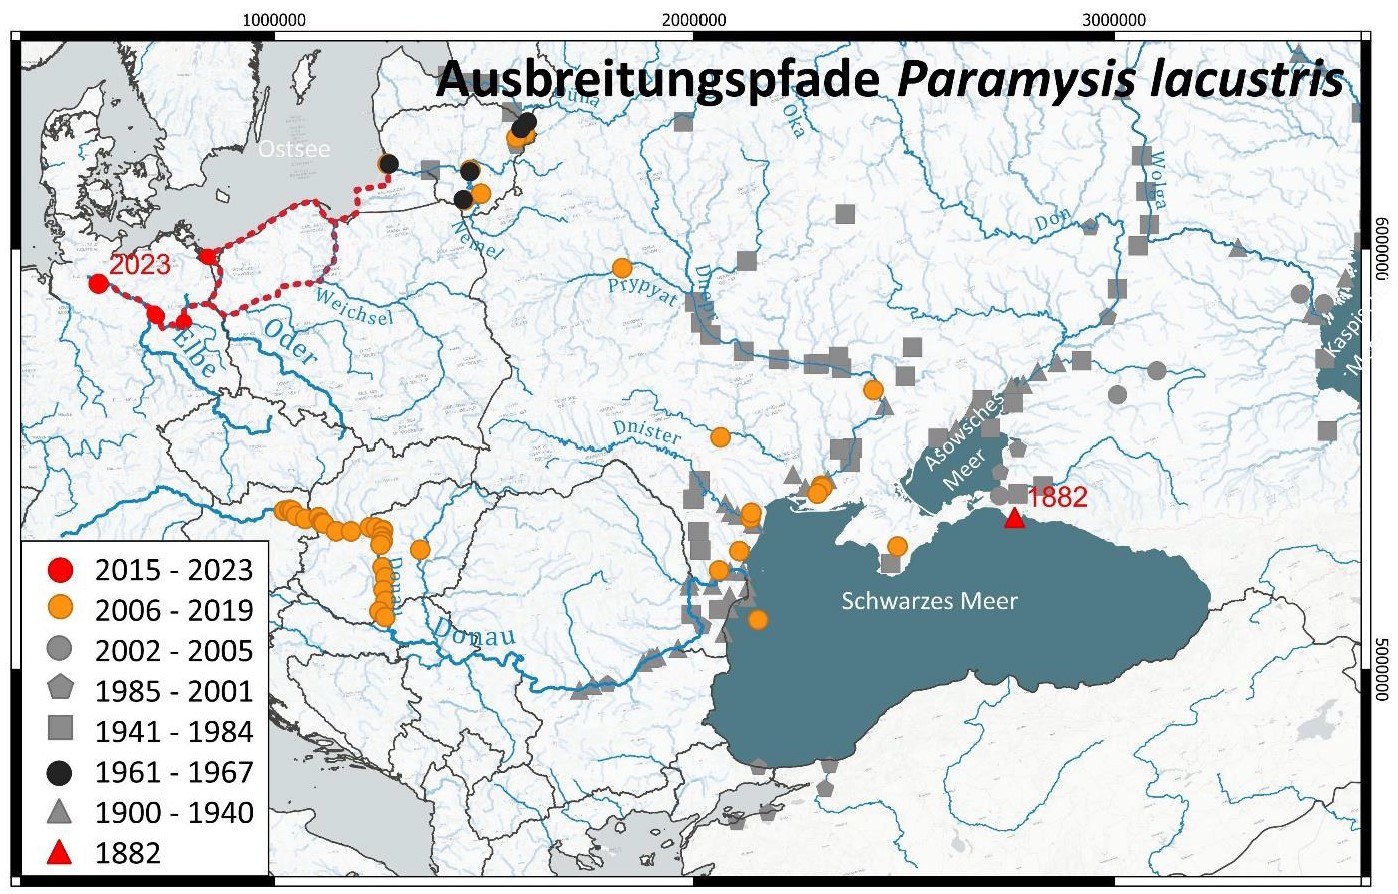 Ausbreitungspfade Paramysis lacustris, Quelle: TU Braunschweig